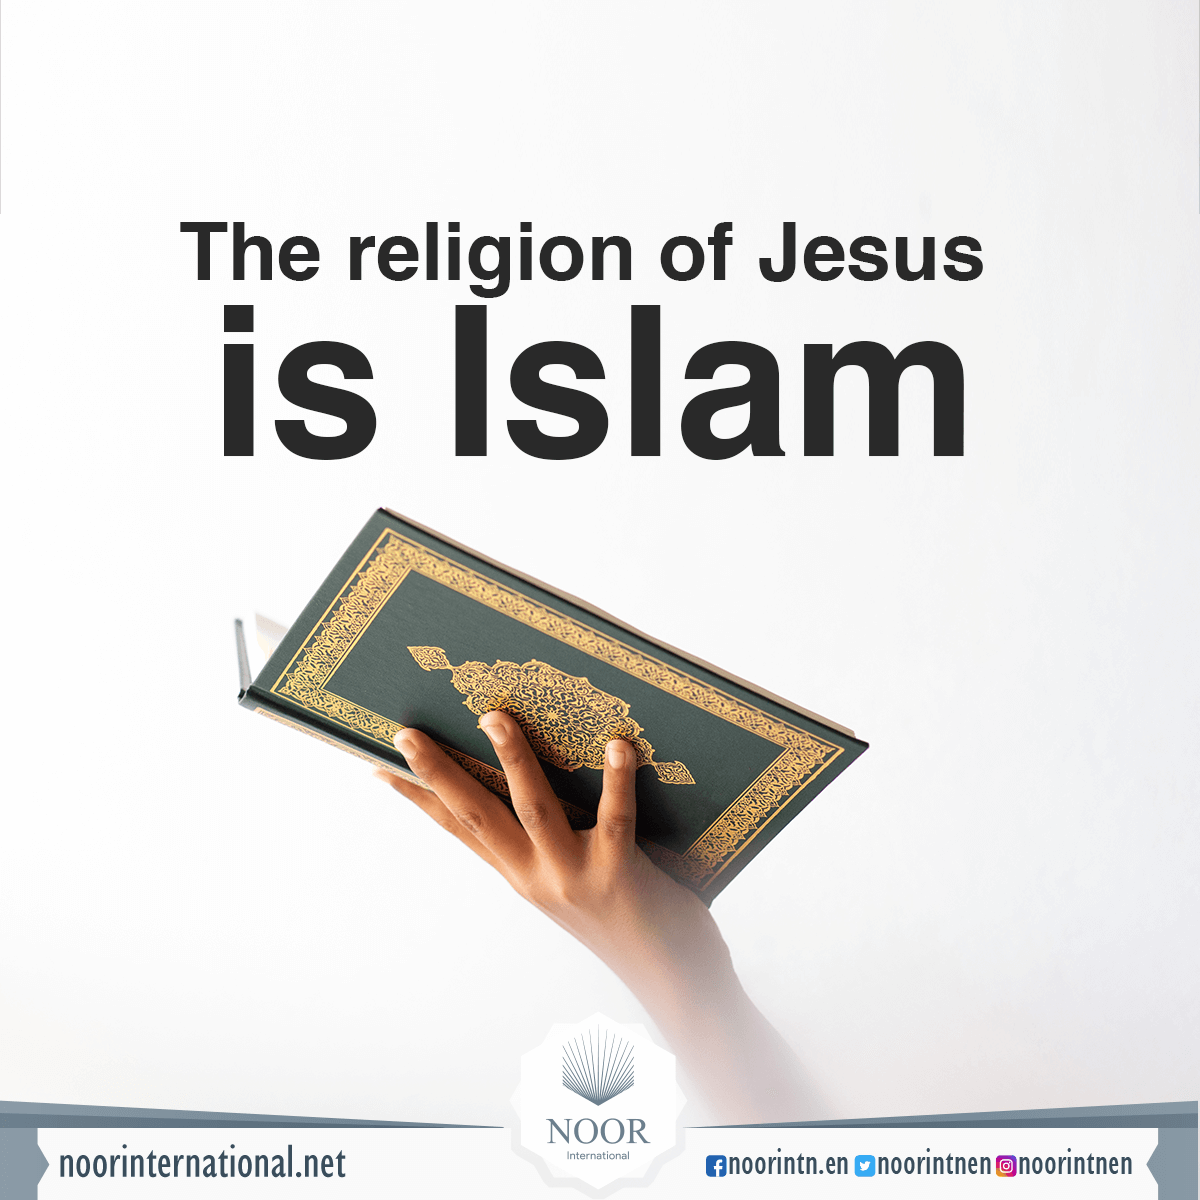 The religion of Jesus is Islam